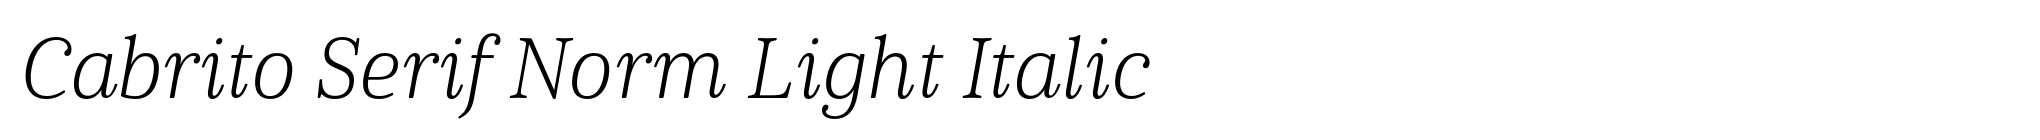 Cabrito Serif Norm Light Italic image